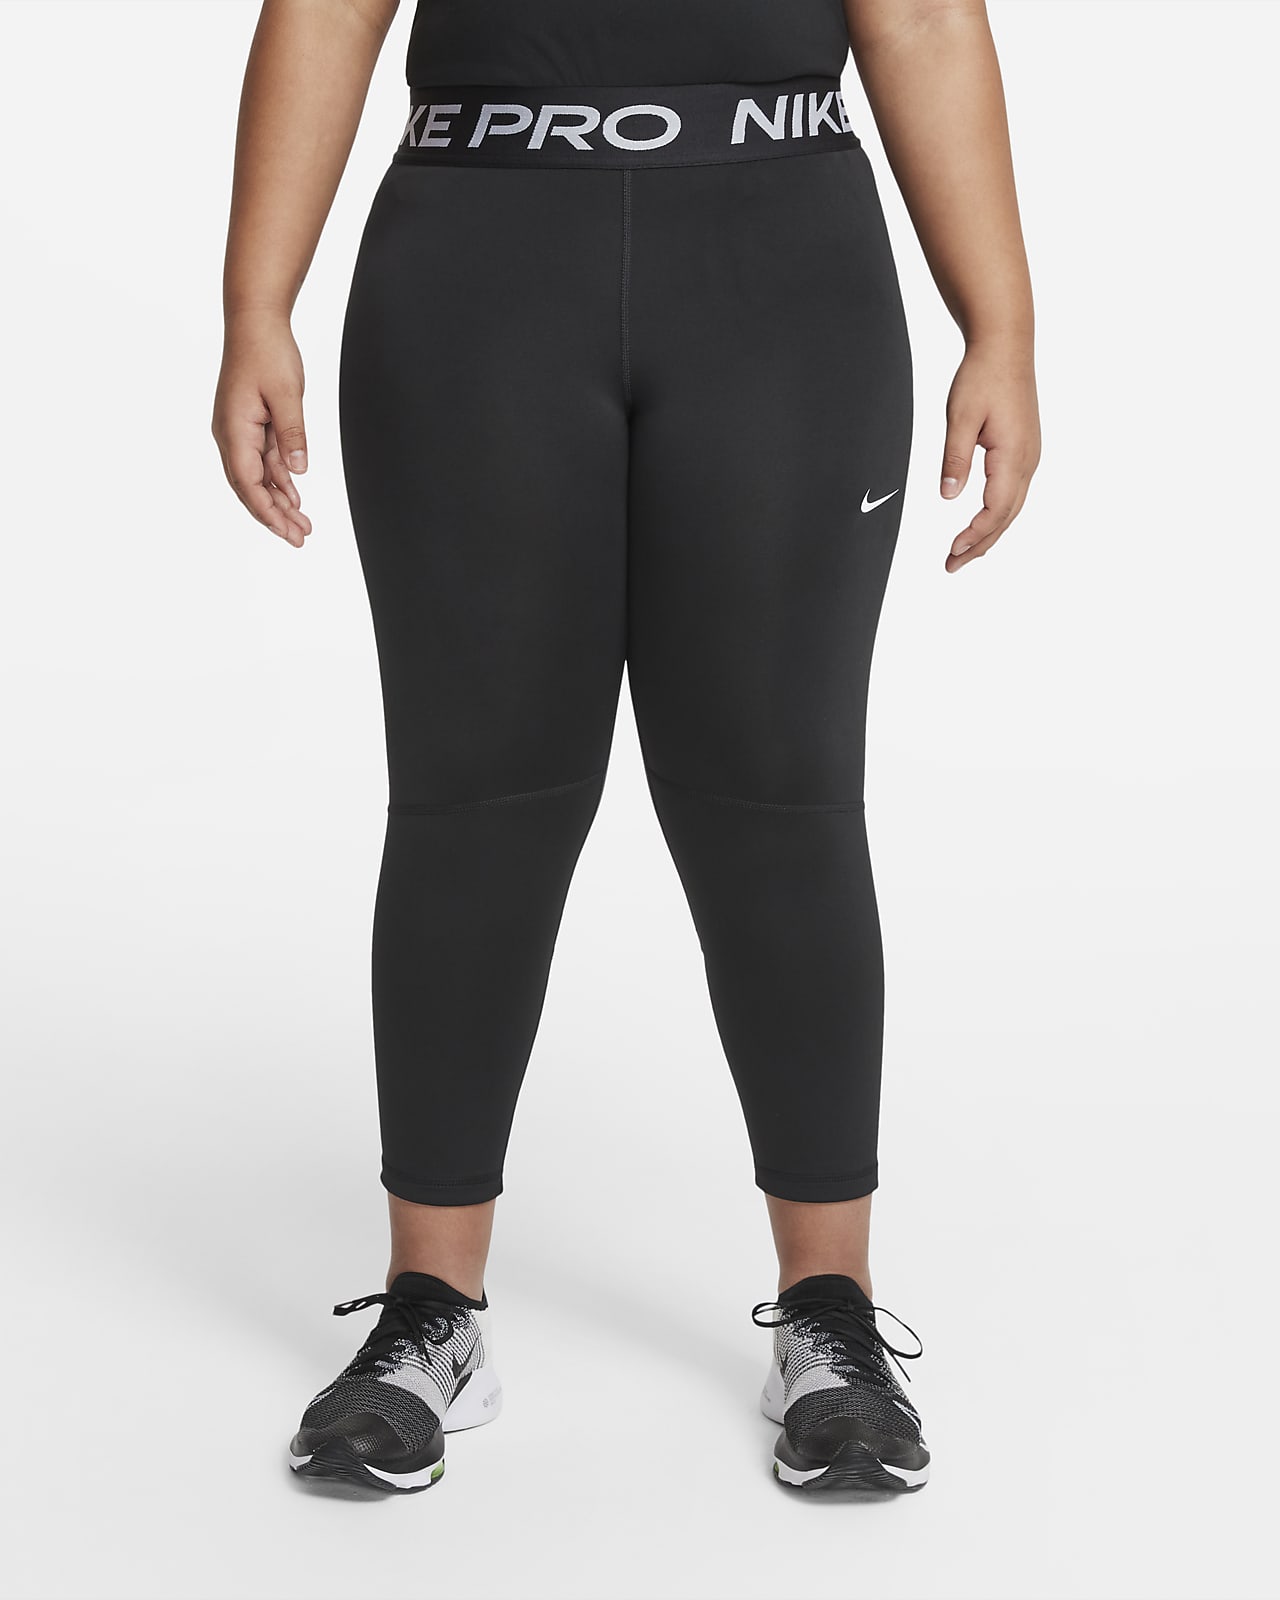 Nike | Pants & Jumpsuits | Nike Drifit Capri Legging | Poshmark